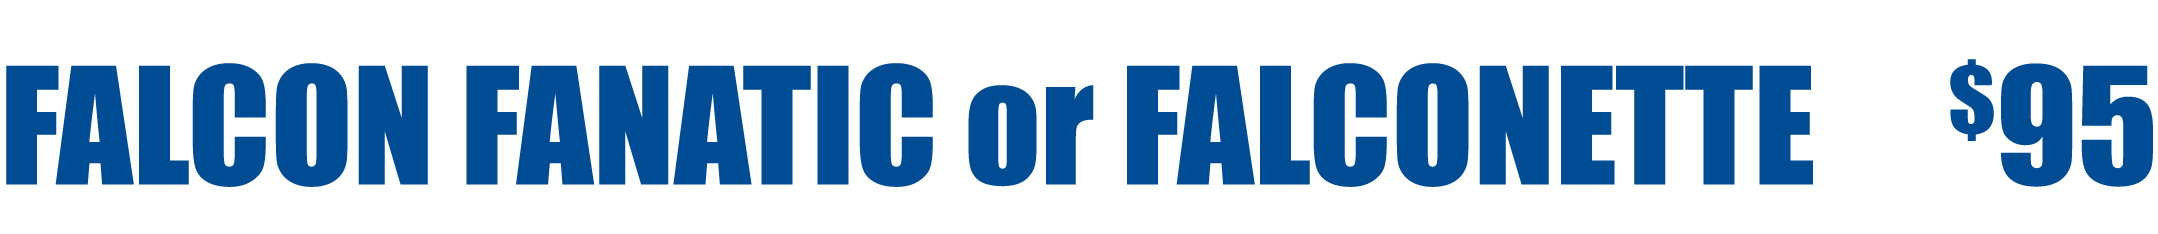 Fanatic & Falconette Membership